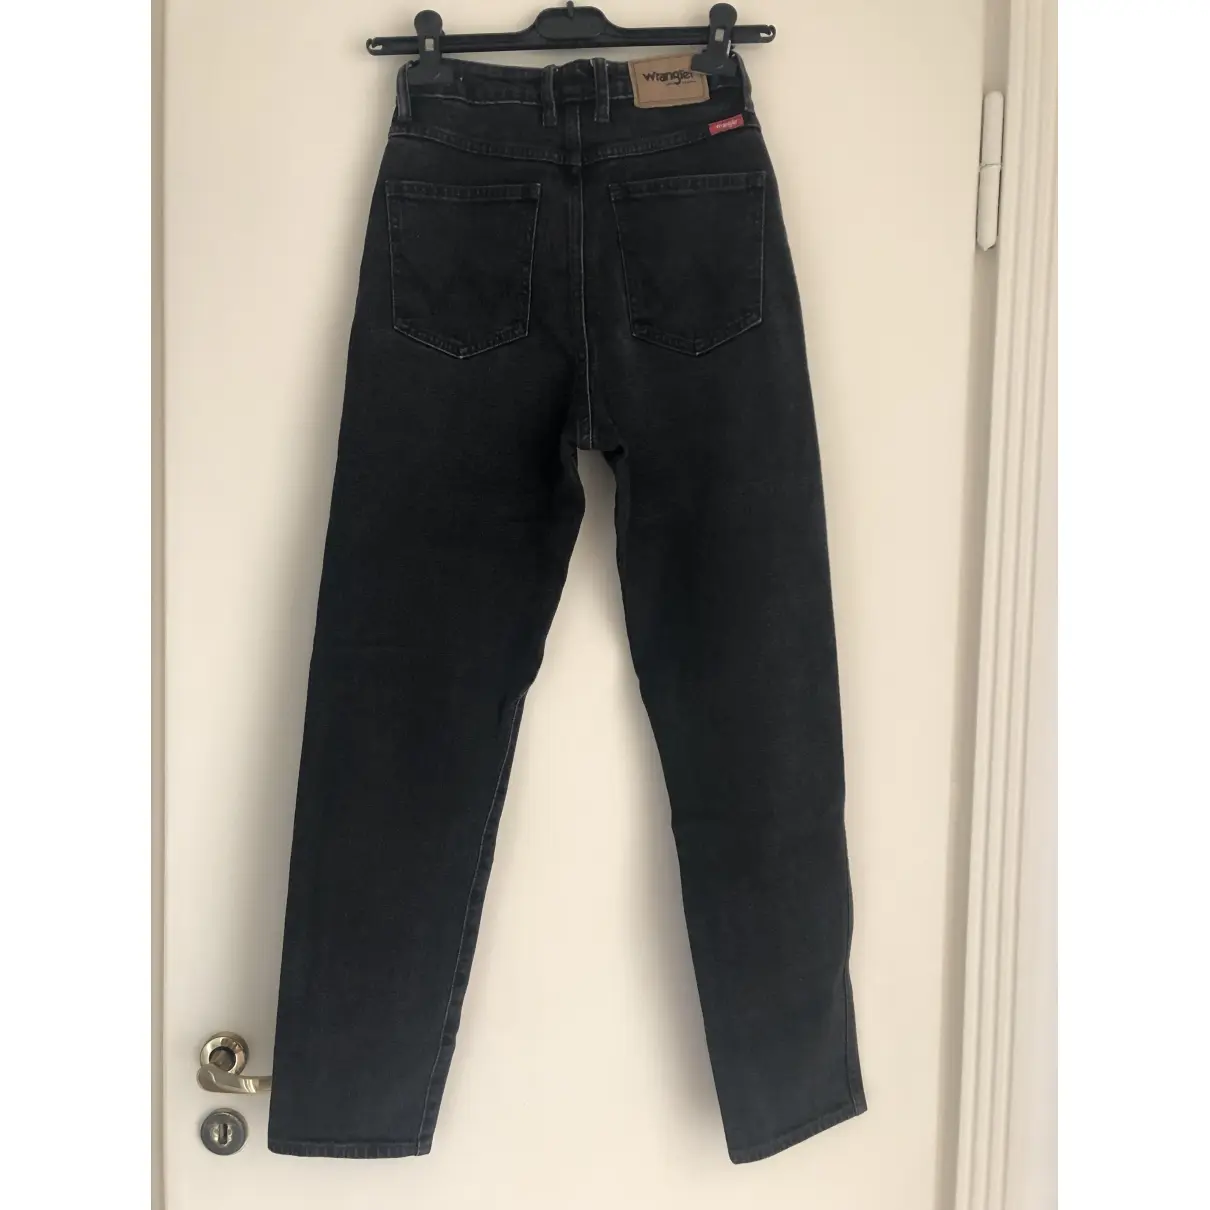 Wrangler Straight jeans for sale